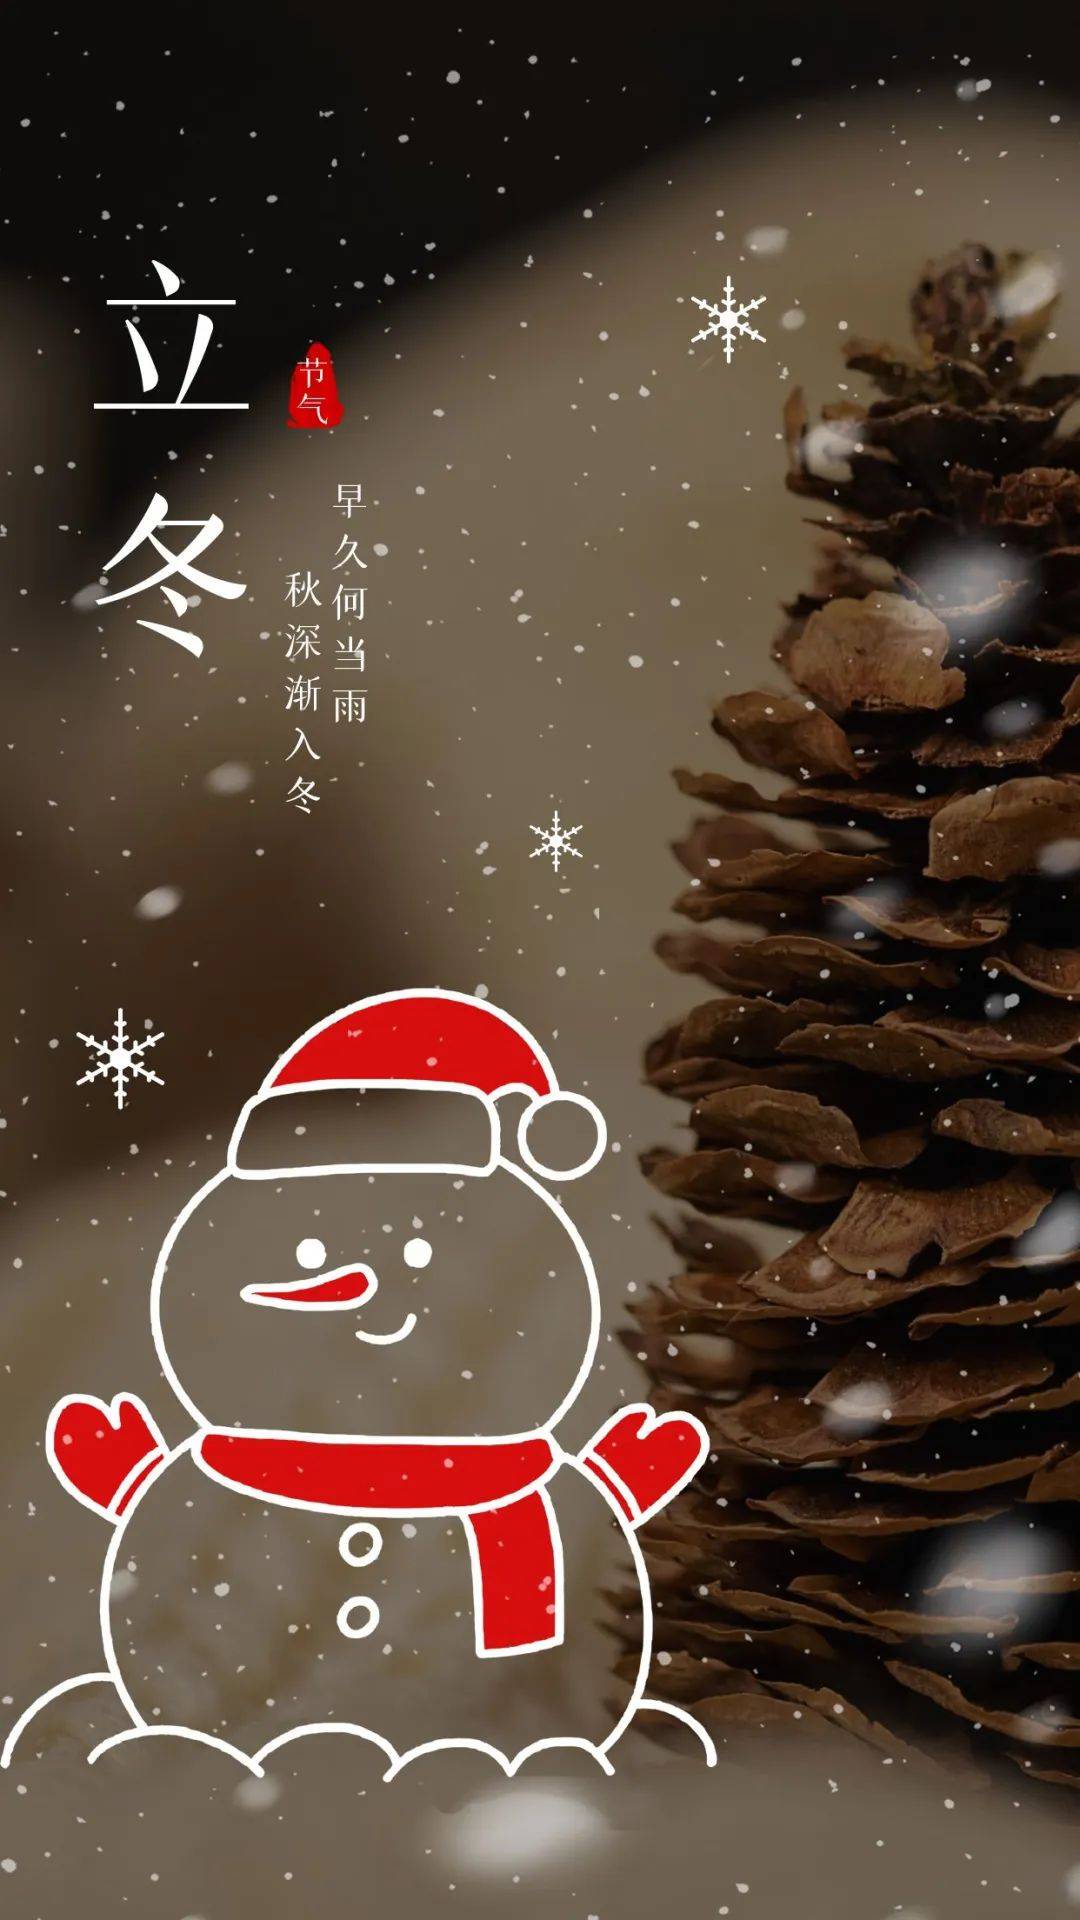 今日立冬 立冬文案 立冬节气海报 立冬图片分享 中国传统二十四节气之